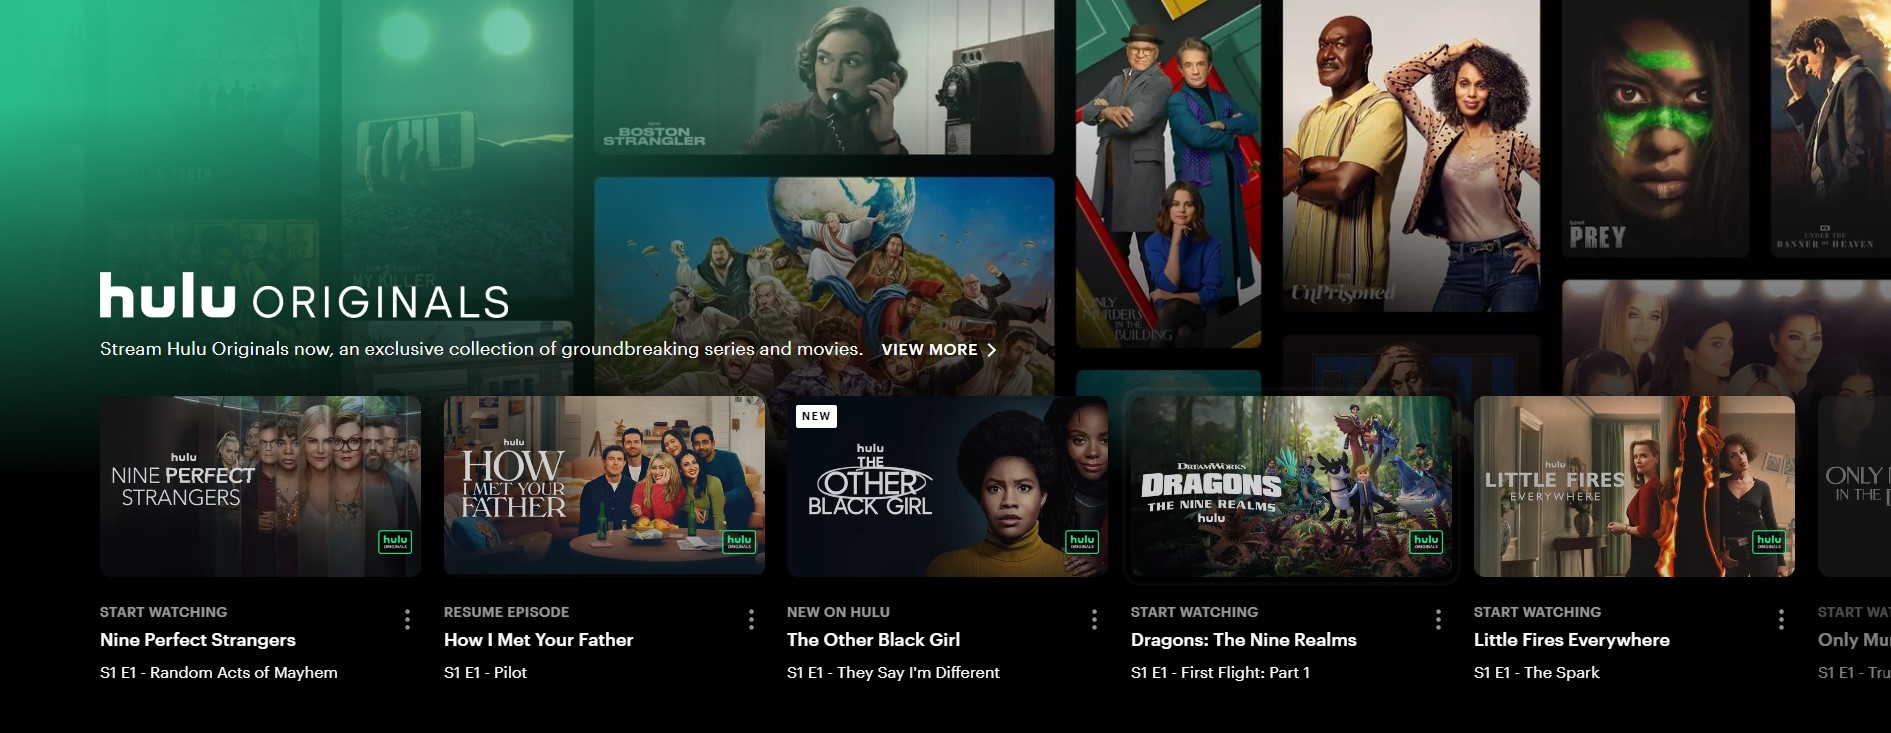 Hulu in Ireland - Hulu originals